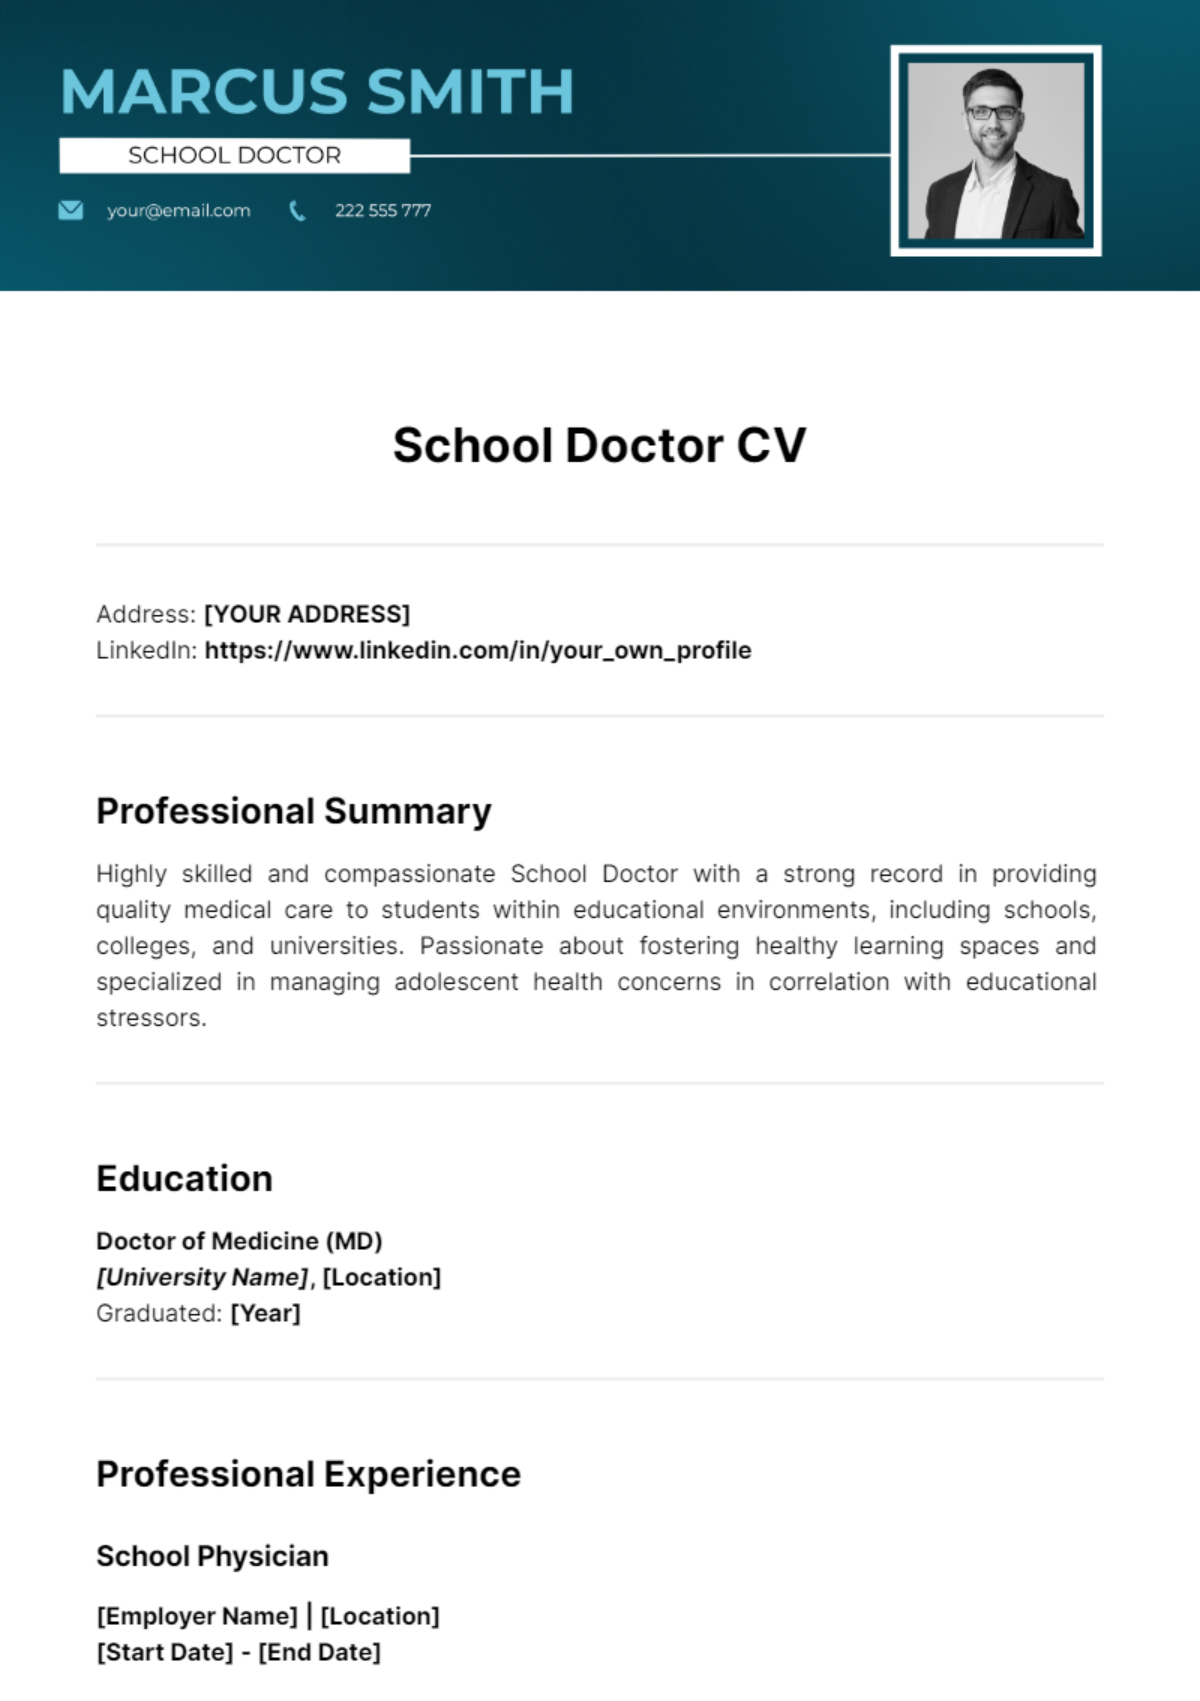 School Doctor CV Template